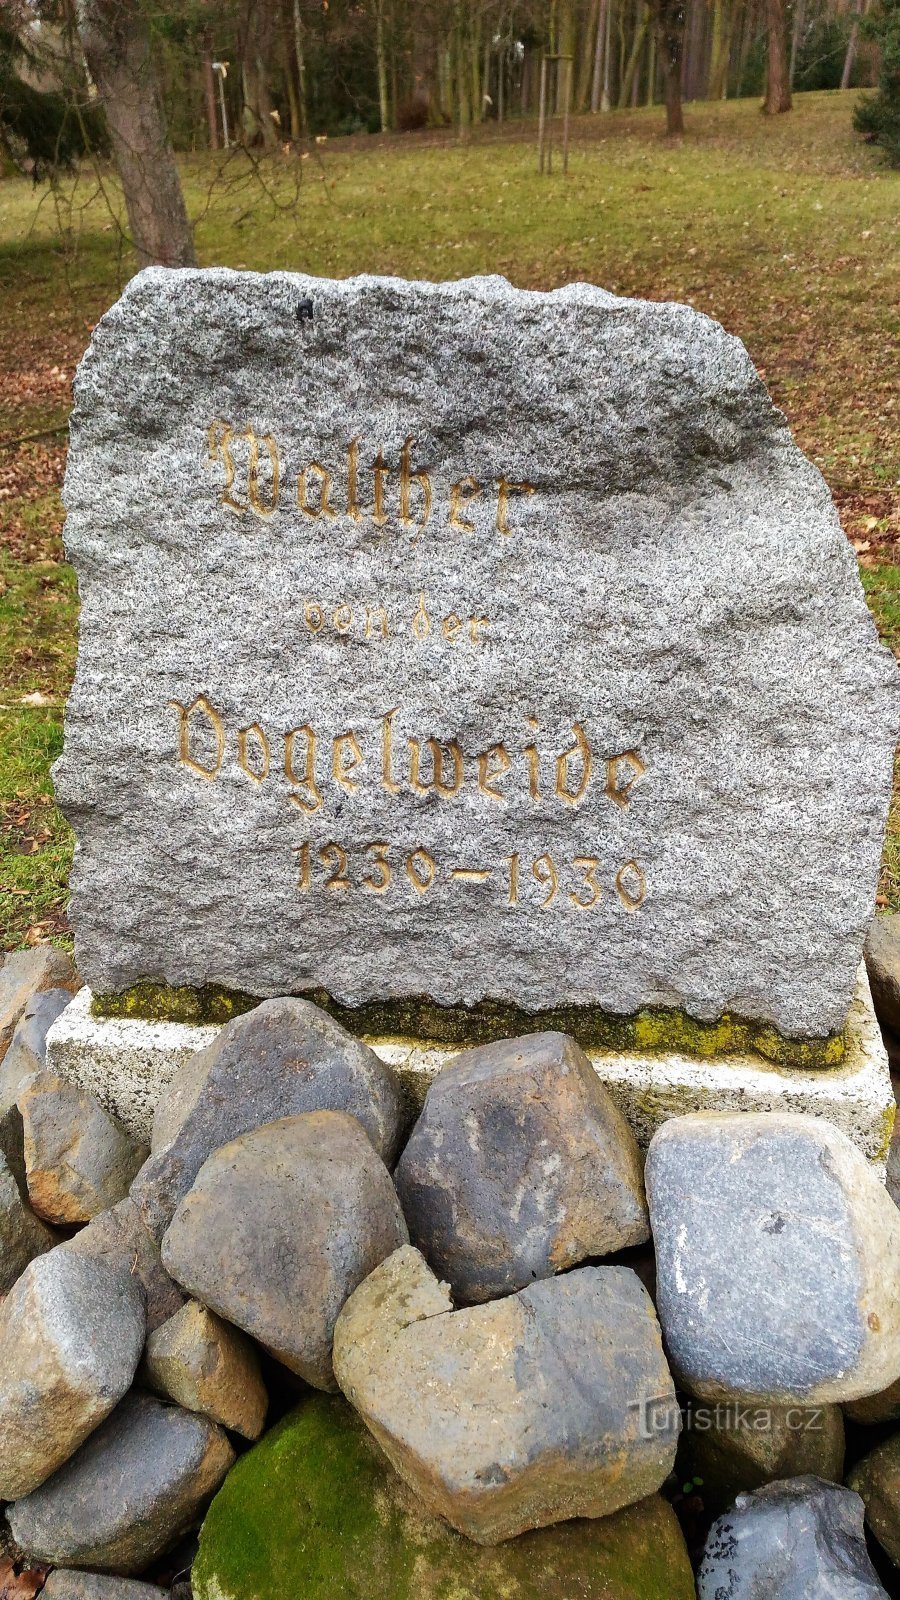 Monument à Walther von der Vogelweide dans le parc municipal de Česká Lípa